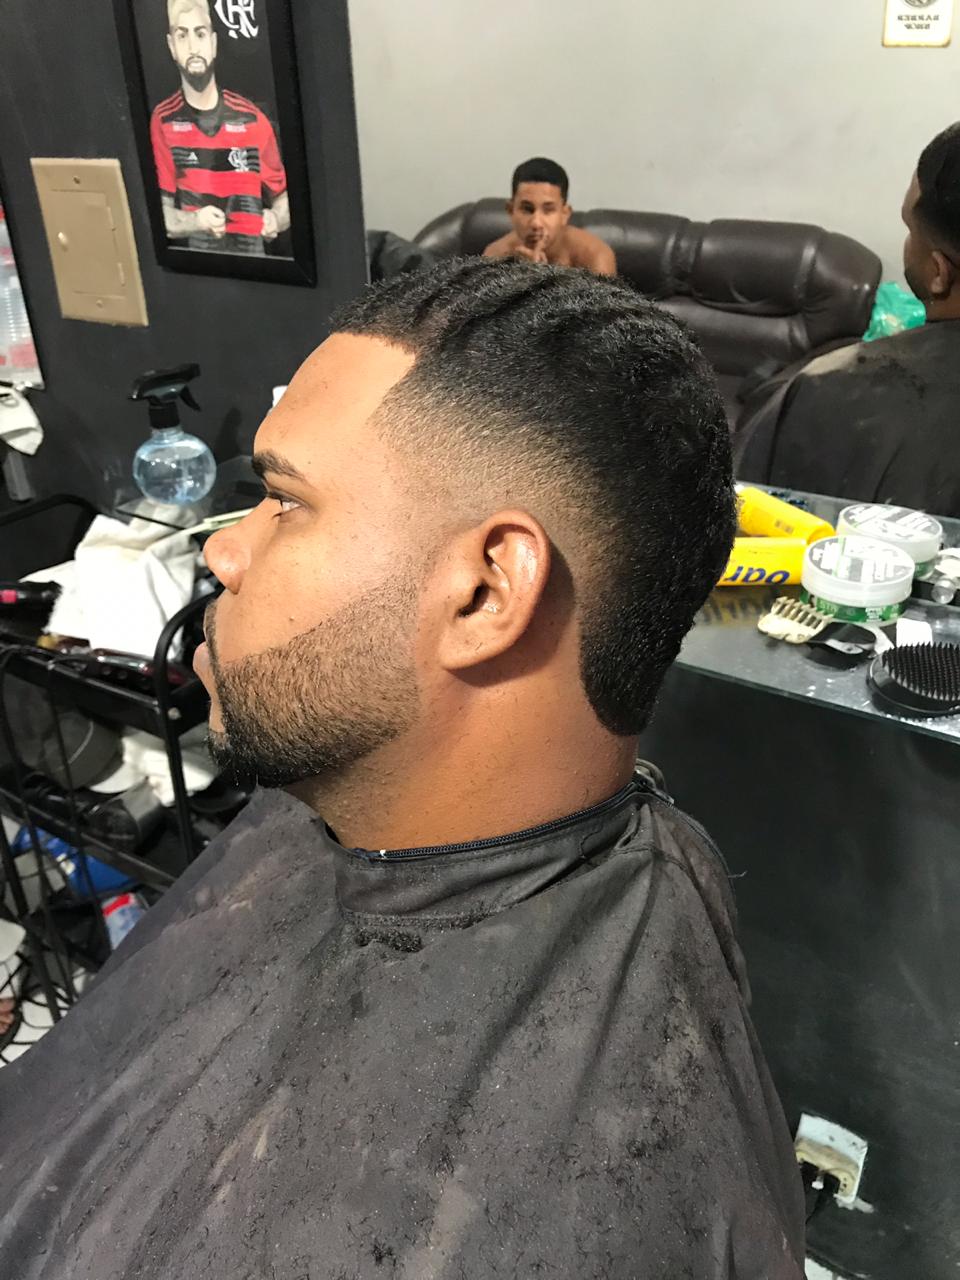 Moicano disfarçado #moicano #barbershop #CorteDeCabelo